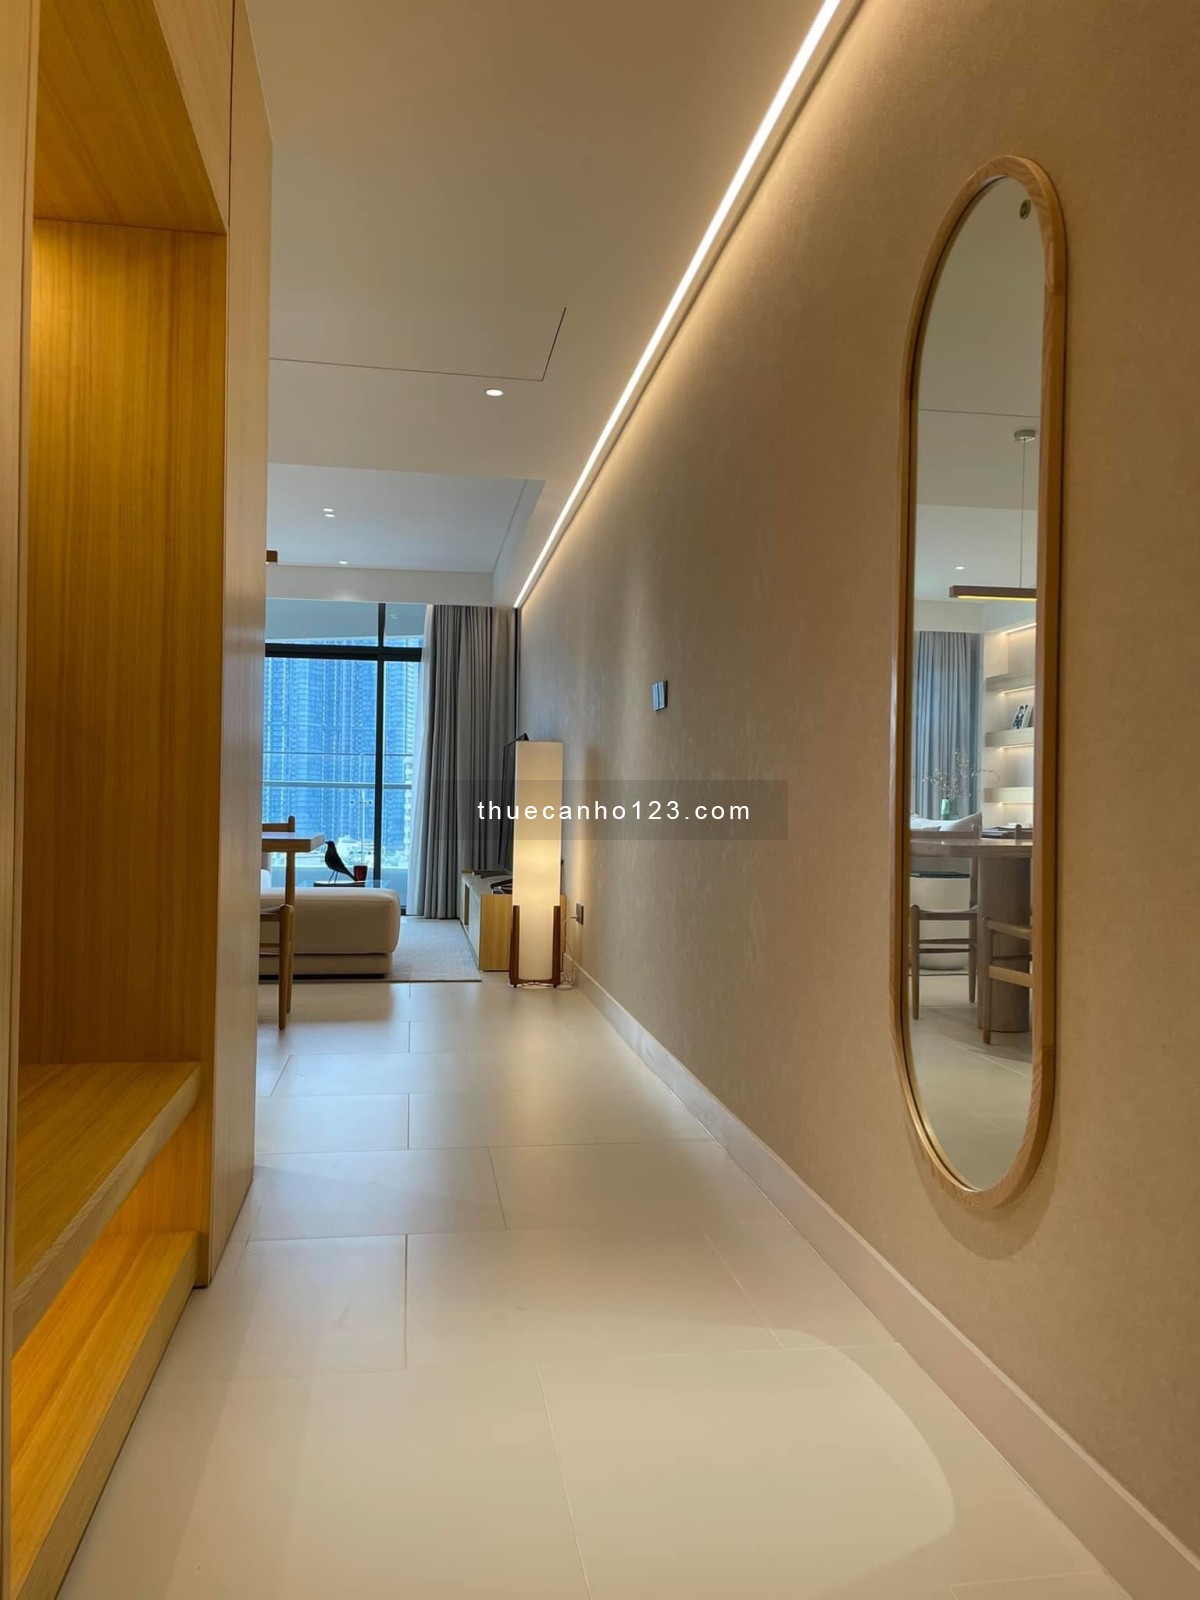 Phòng quản lý kinh doanh Sunwah Pearl cho thuê căn hộ đẹp giá tốt nhất thị trường LH: 0888 998 222